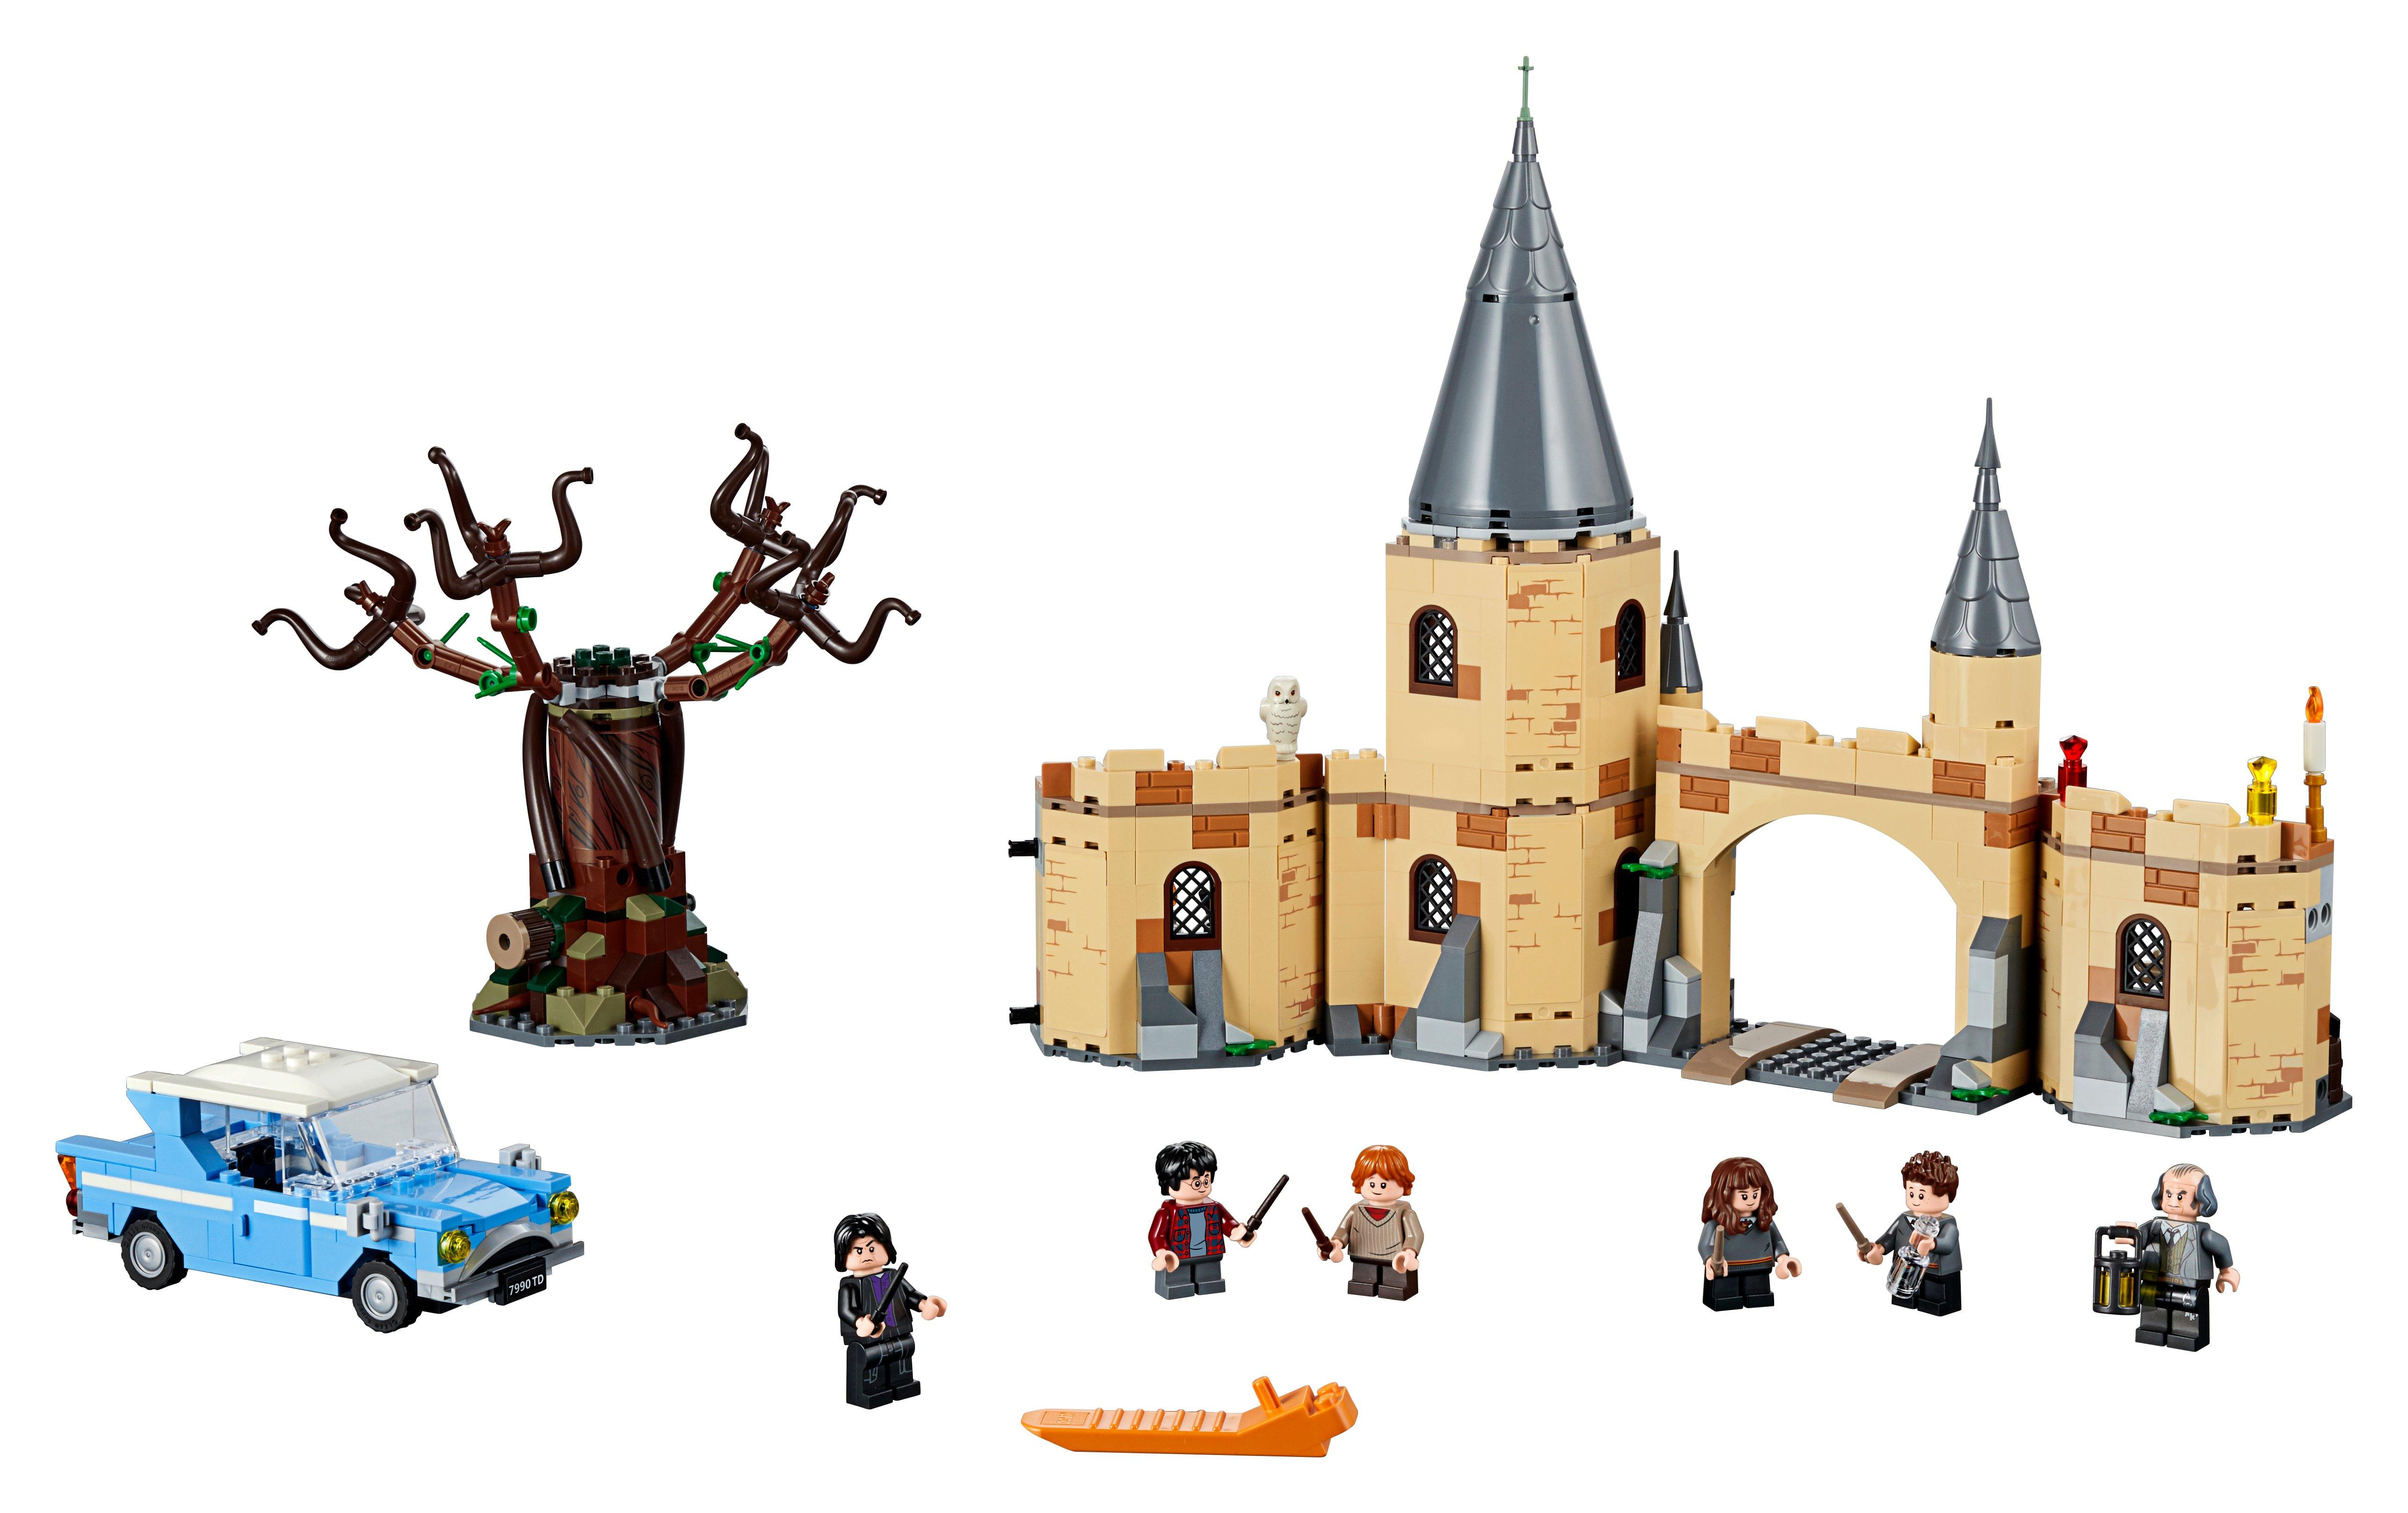 LEGO®  75953 Le Saule Cogneur™ du château de Poudlard™ 